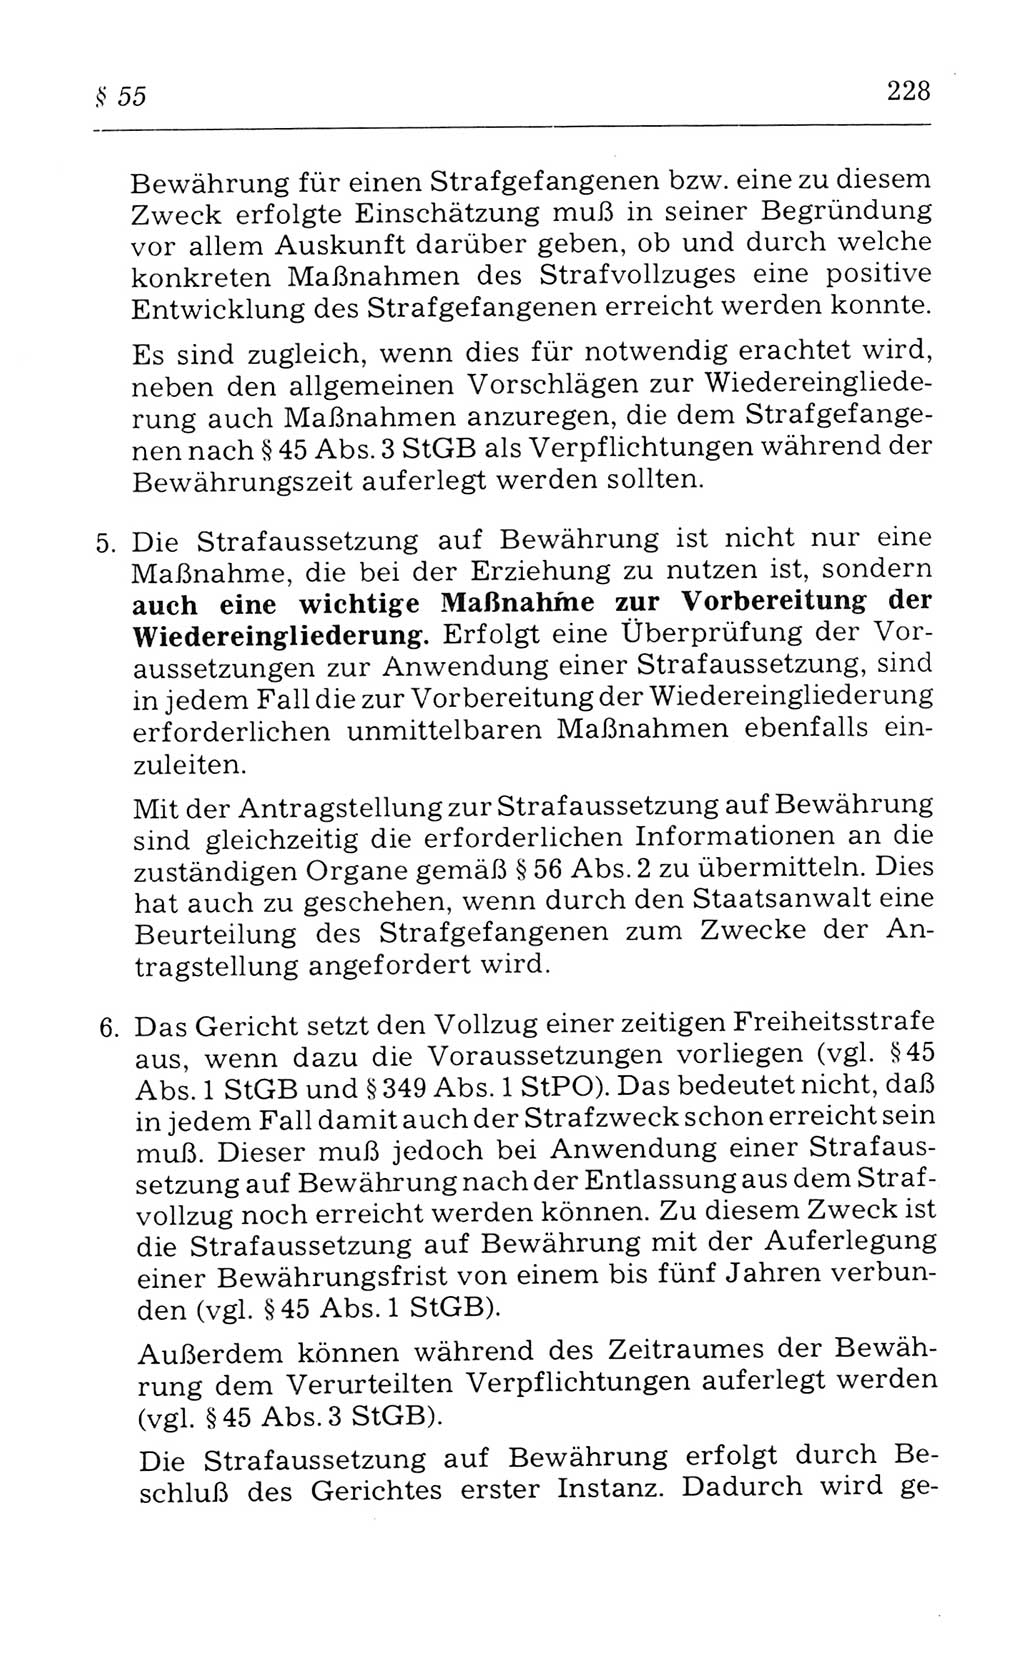 Kommentar zum Strafvollzugsgesetz [(StVG) Deutsche Demokratische Republik (DDR)] 1980, Seite 228 (Komm. StVG DDR 1980, S. 228)